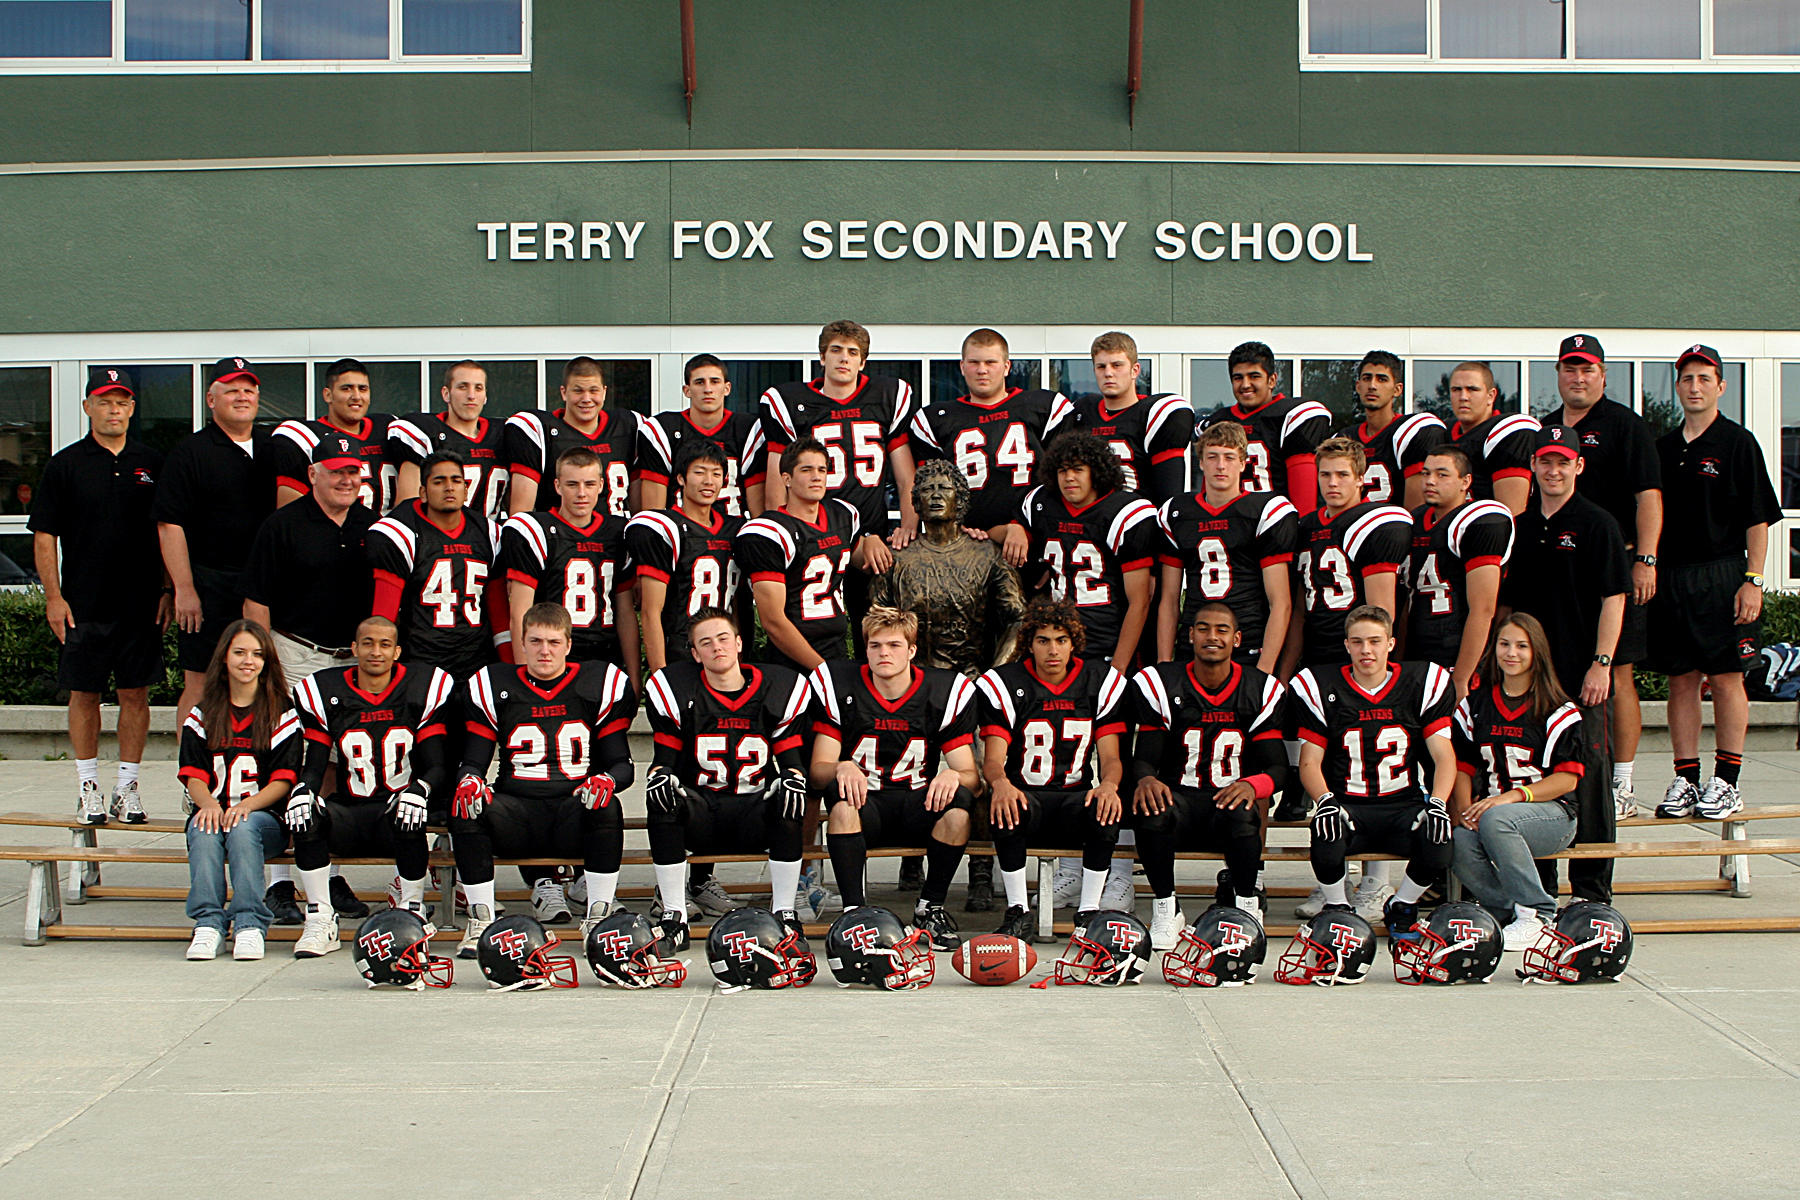 2005 Senior Football Team